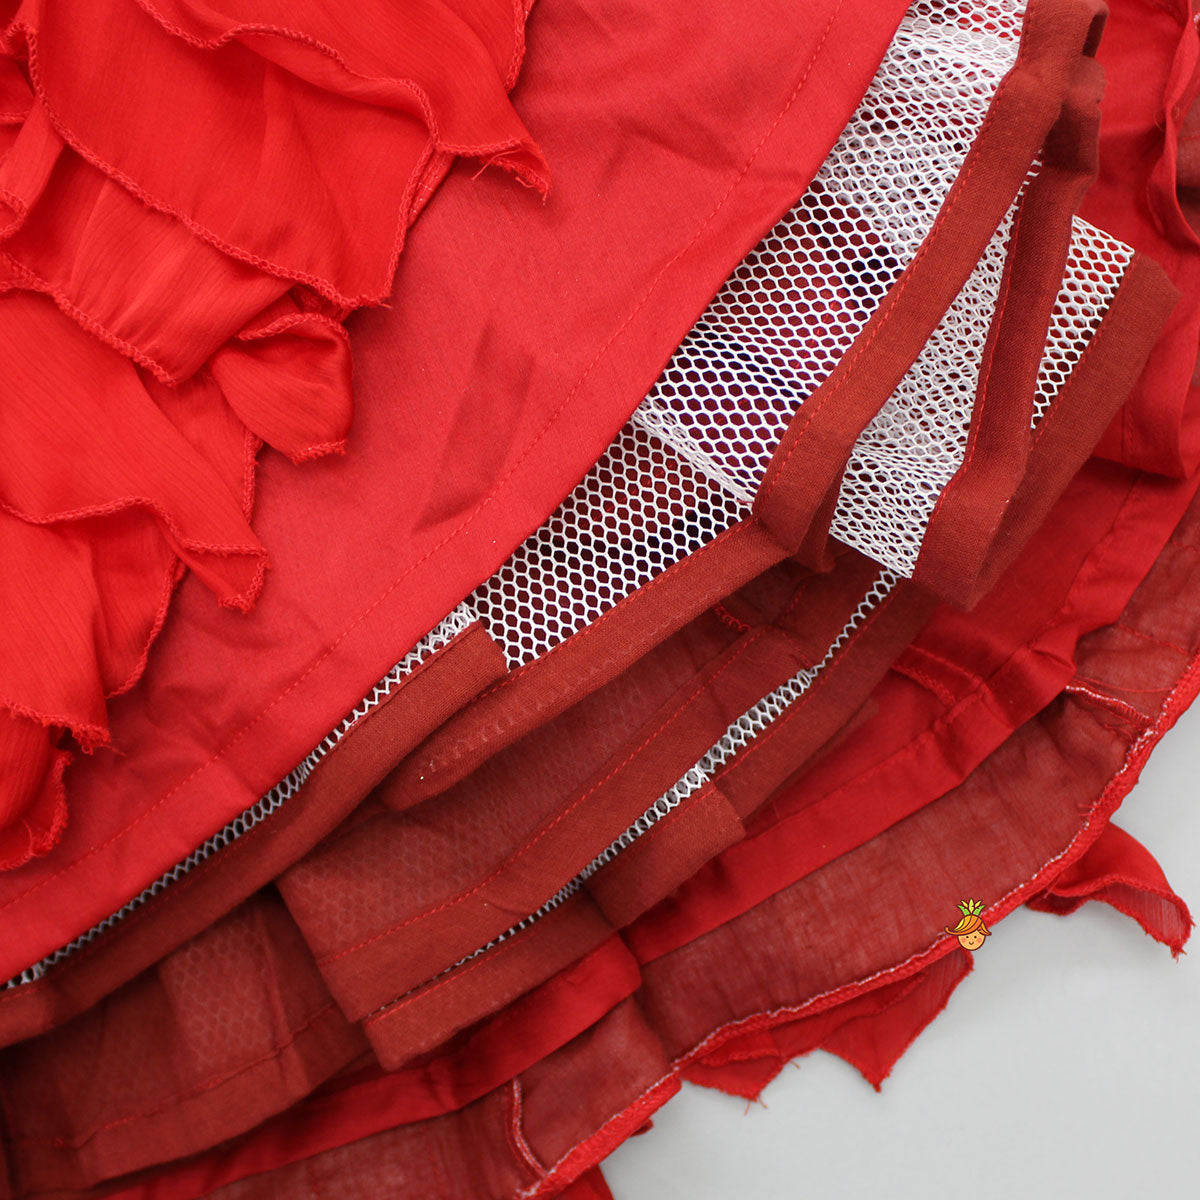 Frilly Sleeves V Neck Red Layered Drape Top And Stylish Lehenga